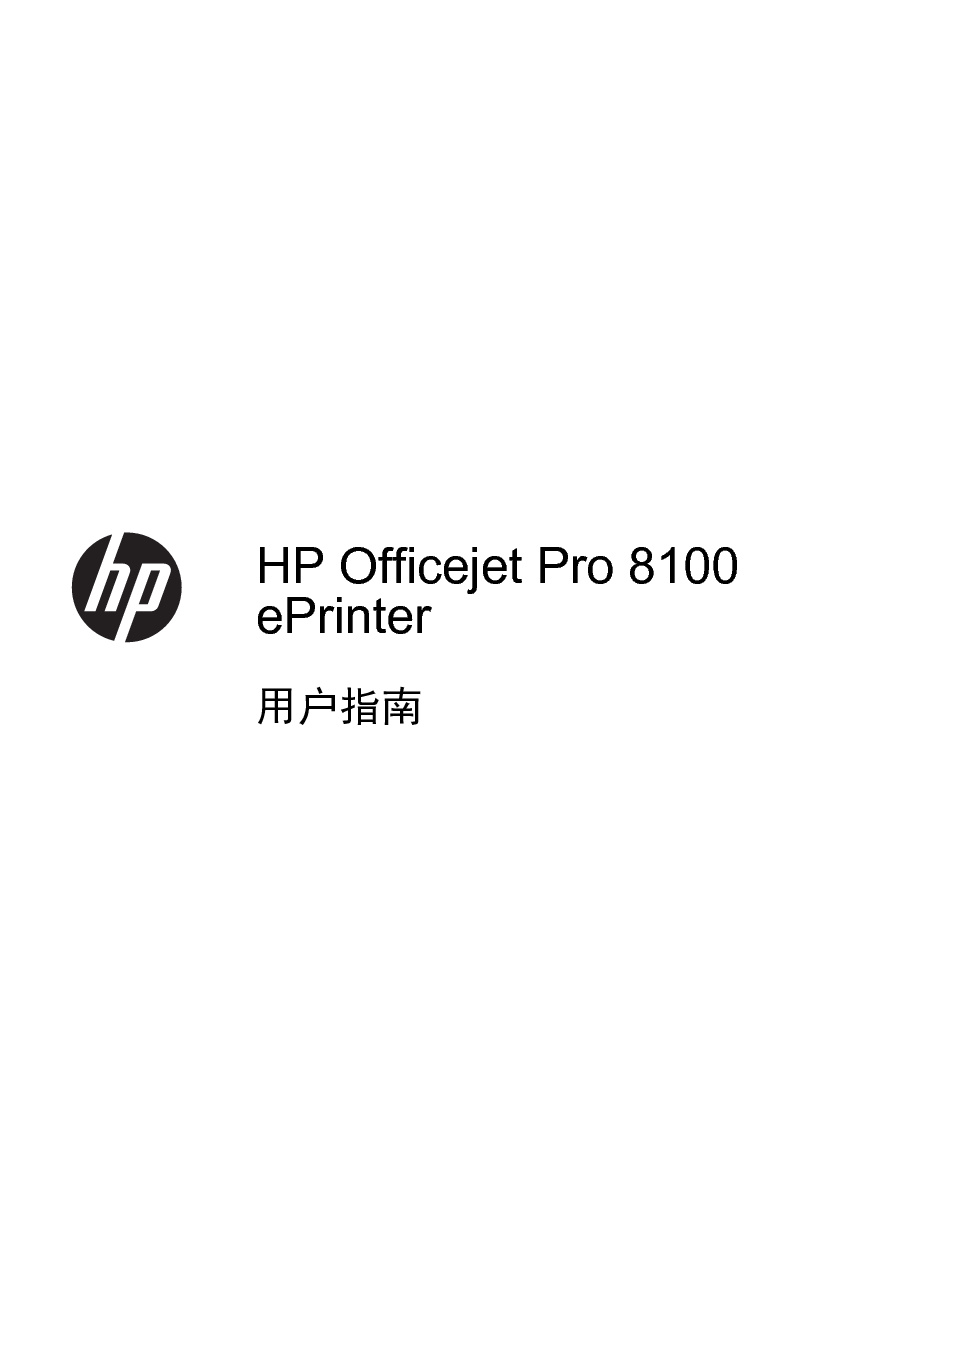 惠普 HP OfficeJet Pro 8100 用户指南 第2页